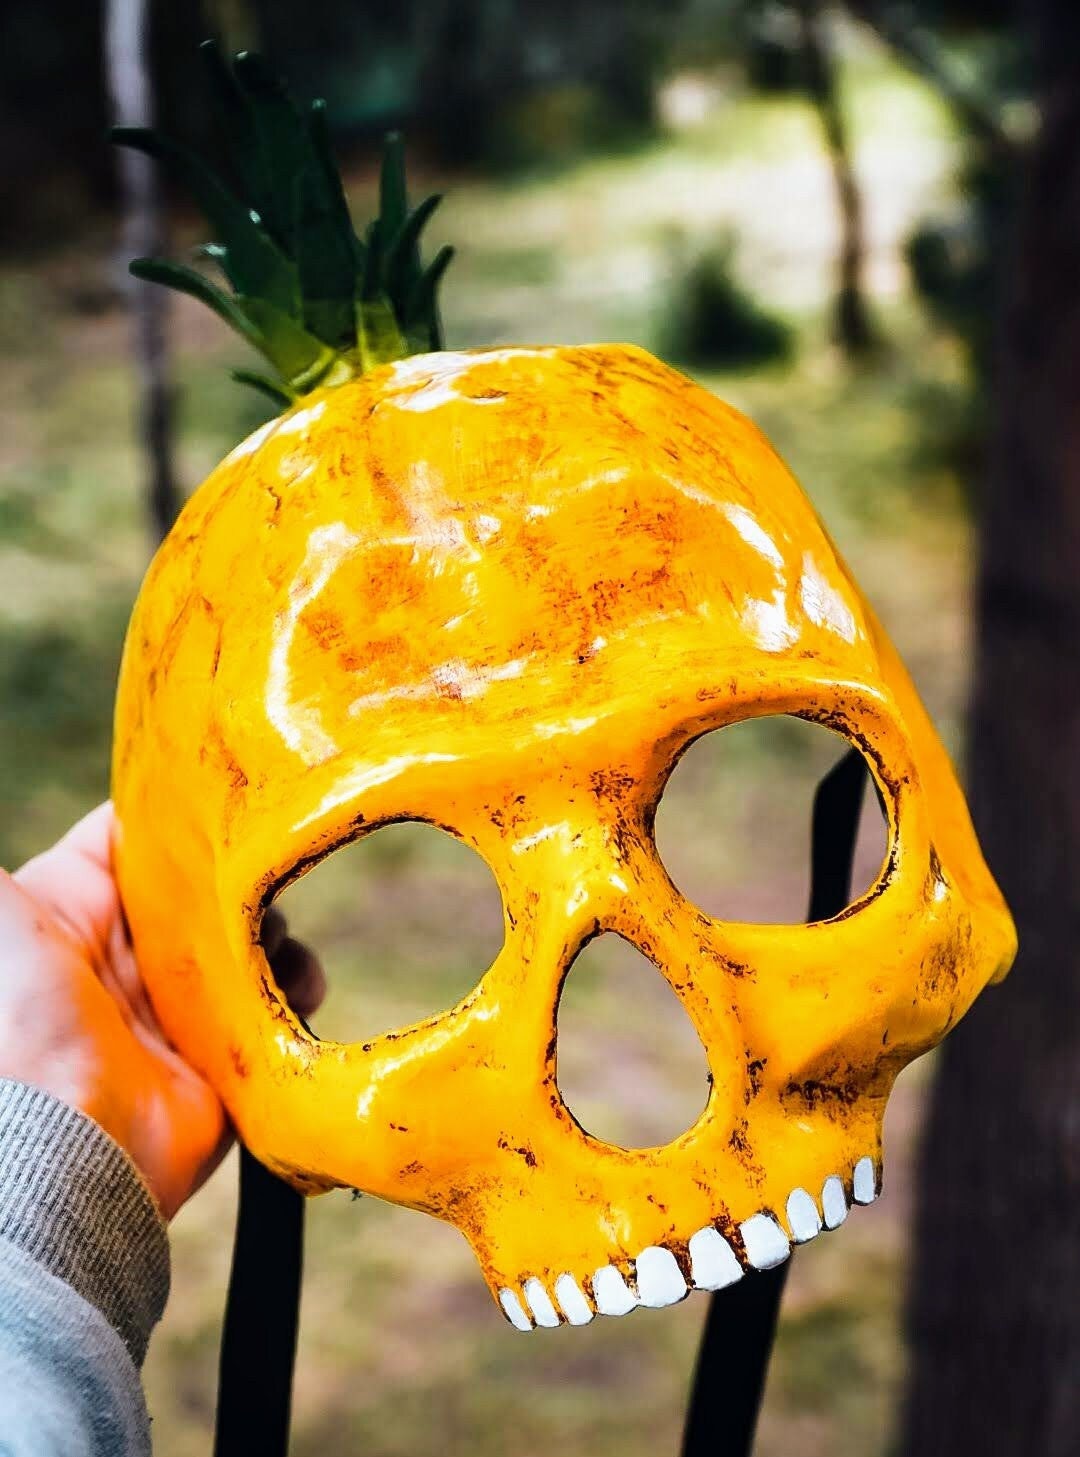 Mask ready - Venetian Skull mask Ananas fruit venetian style